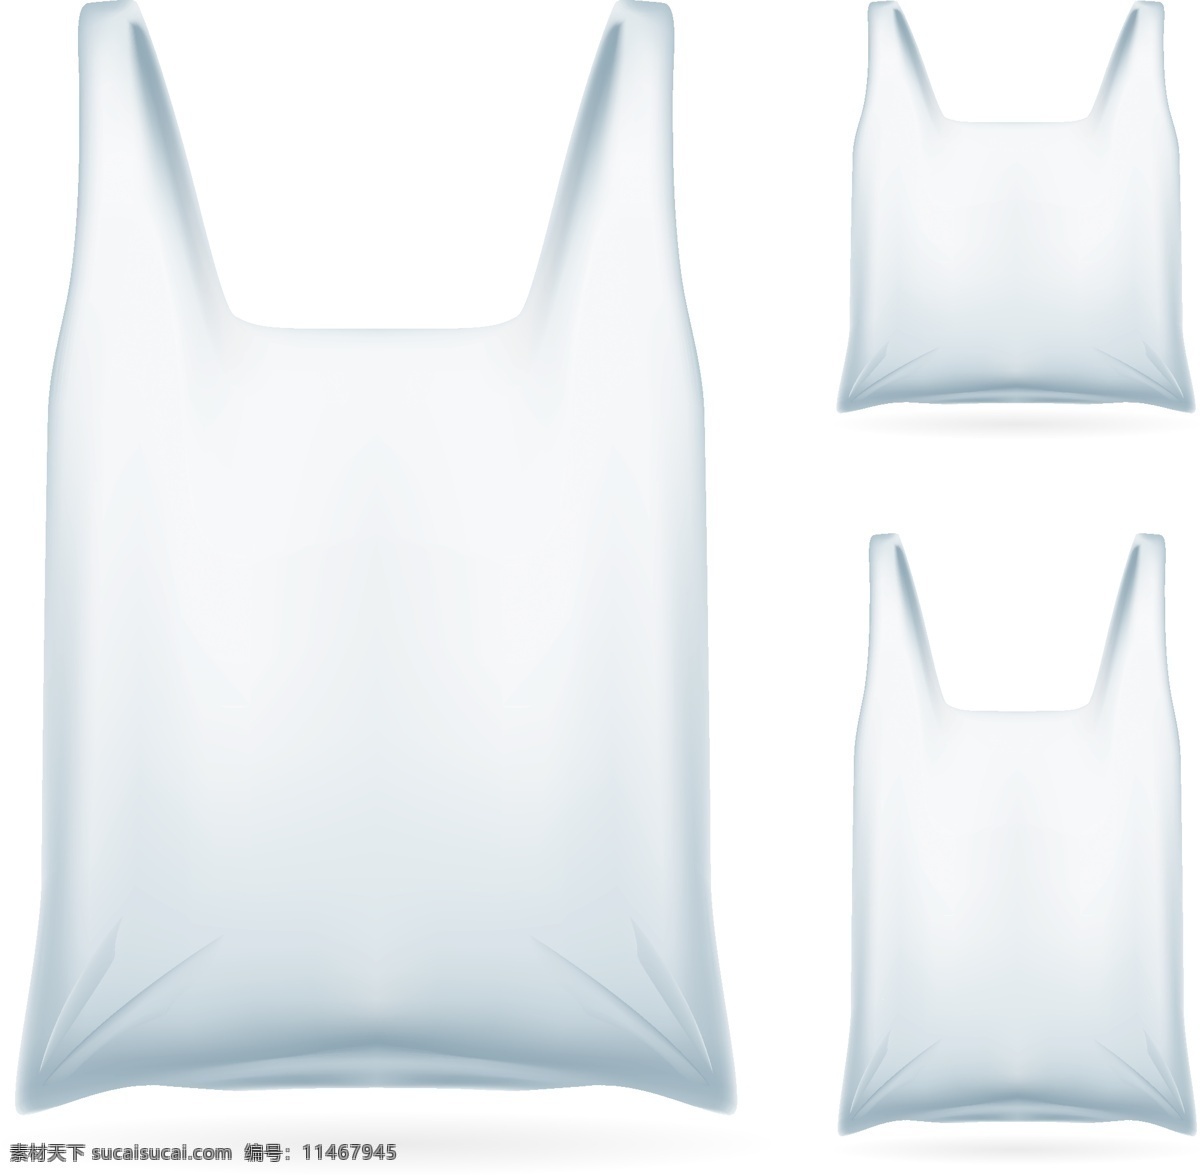 空白 透明 塑料袋 eps格式 购物袋 矢量图 透明袋 ai素材 包装设计